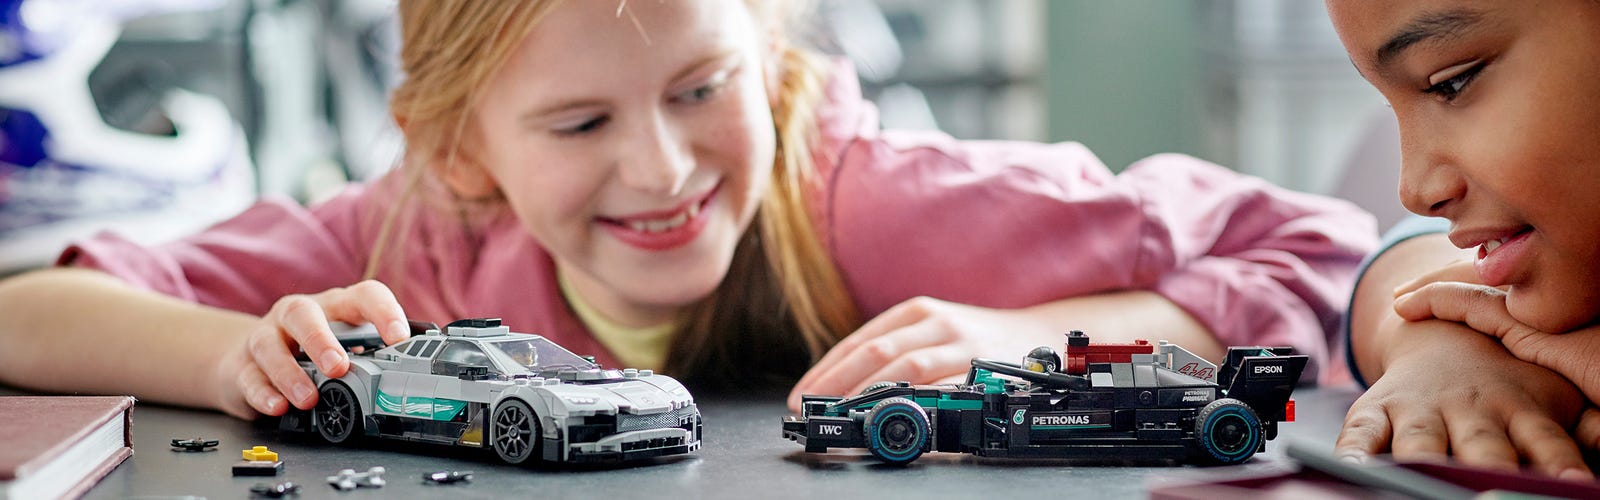 Le 15 migliori auto giocattolo LEGO® per i bambini e gli adulti